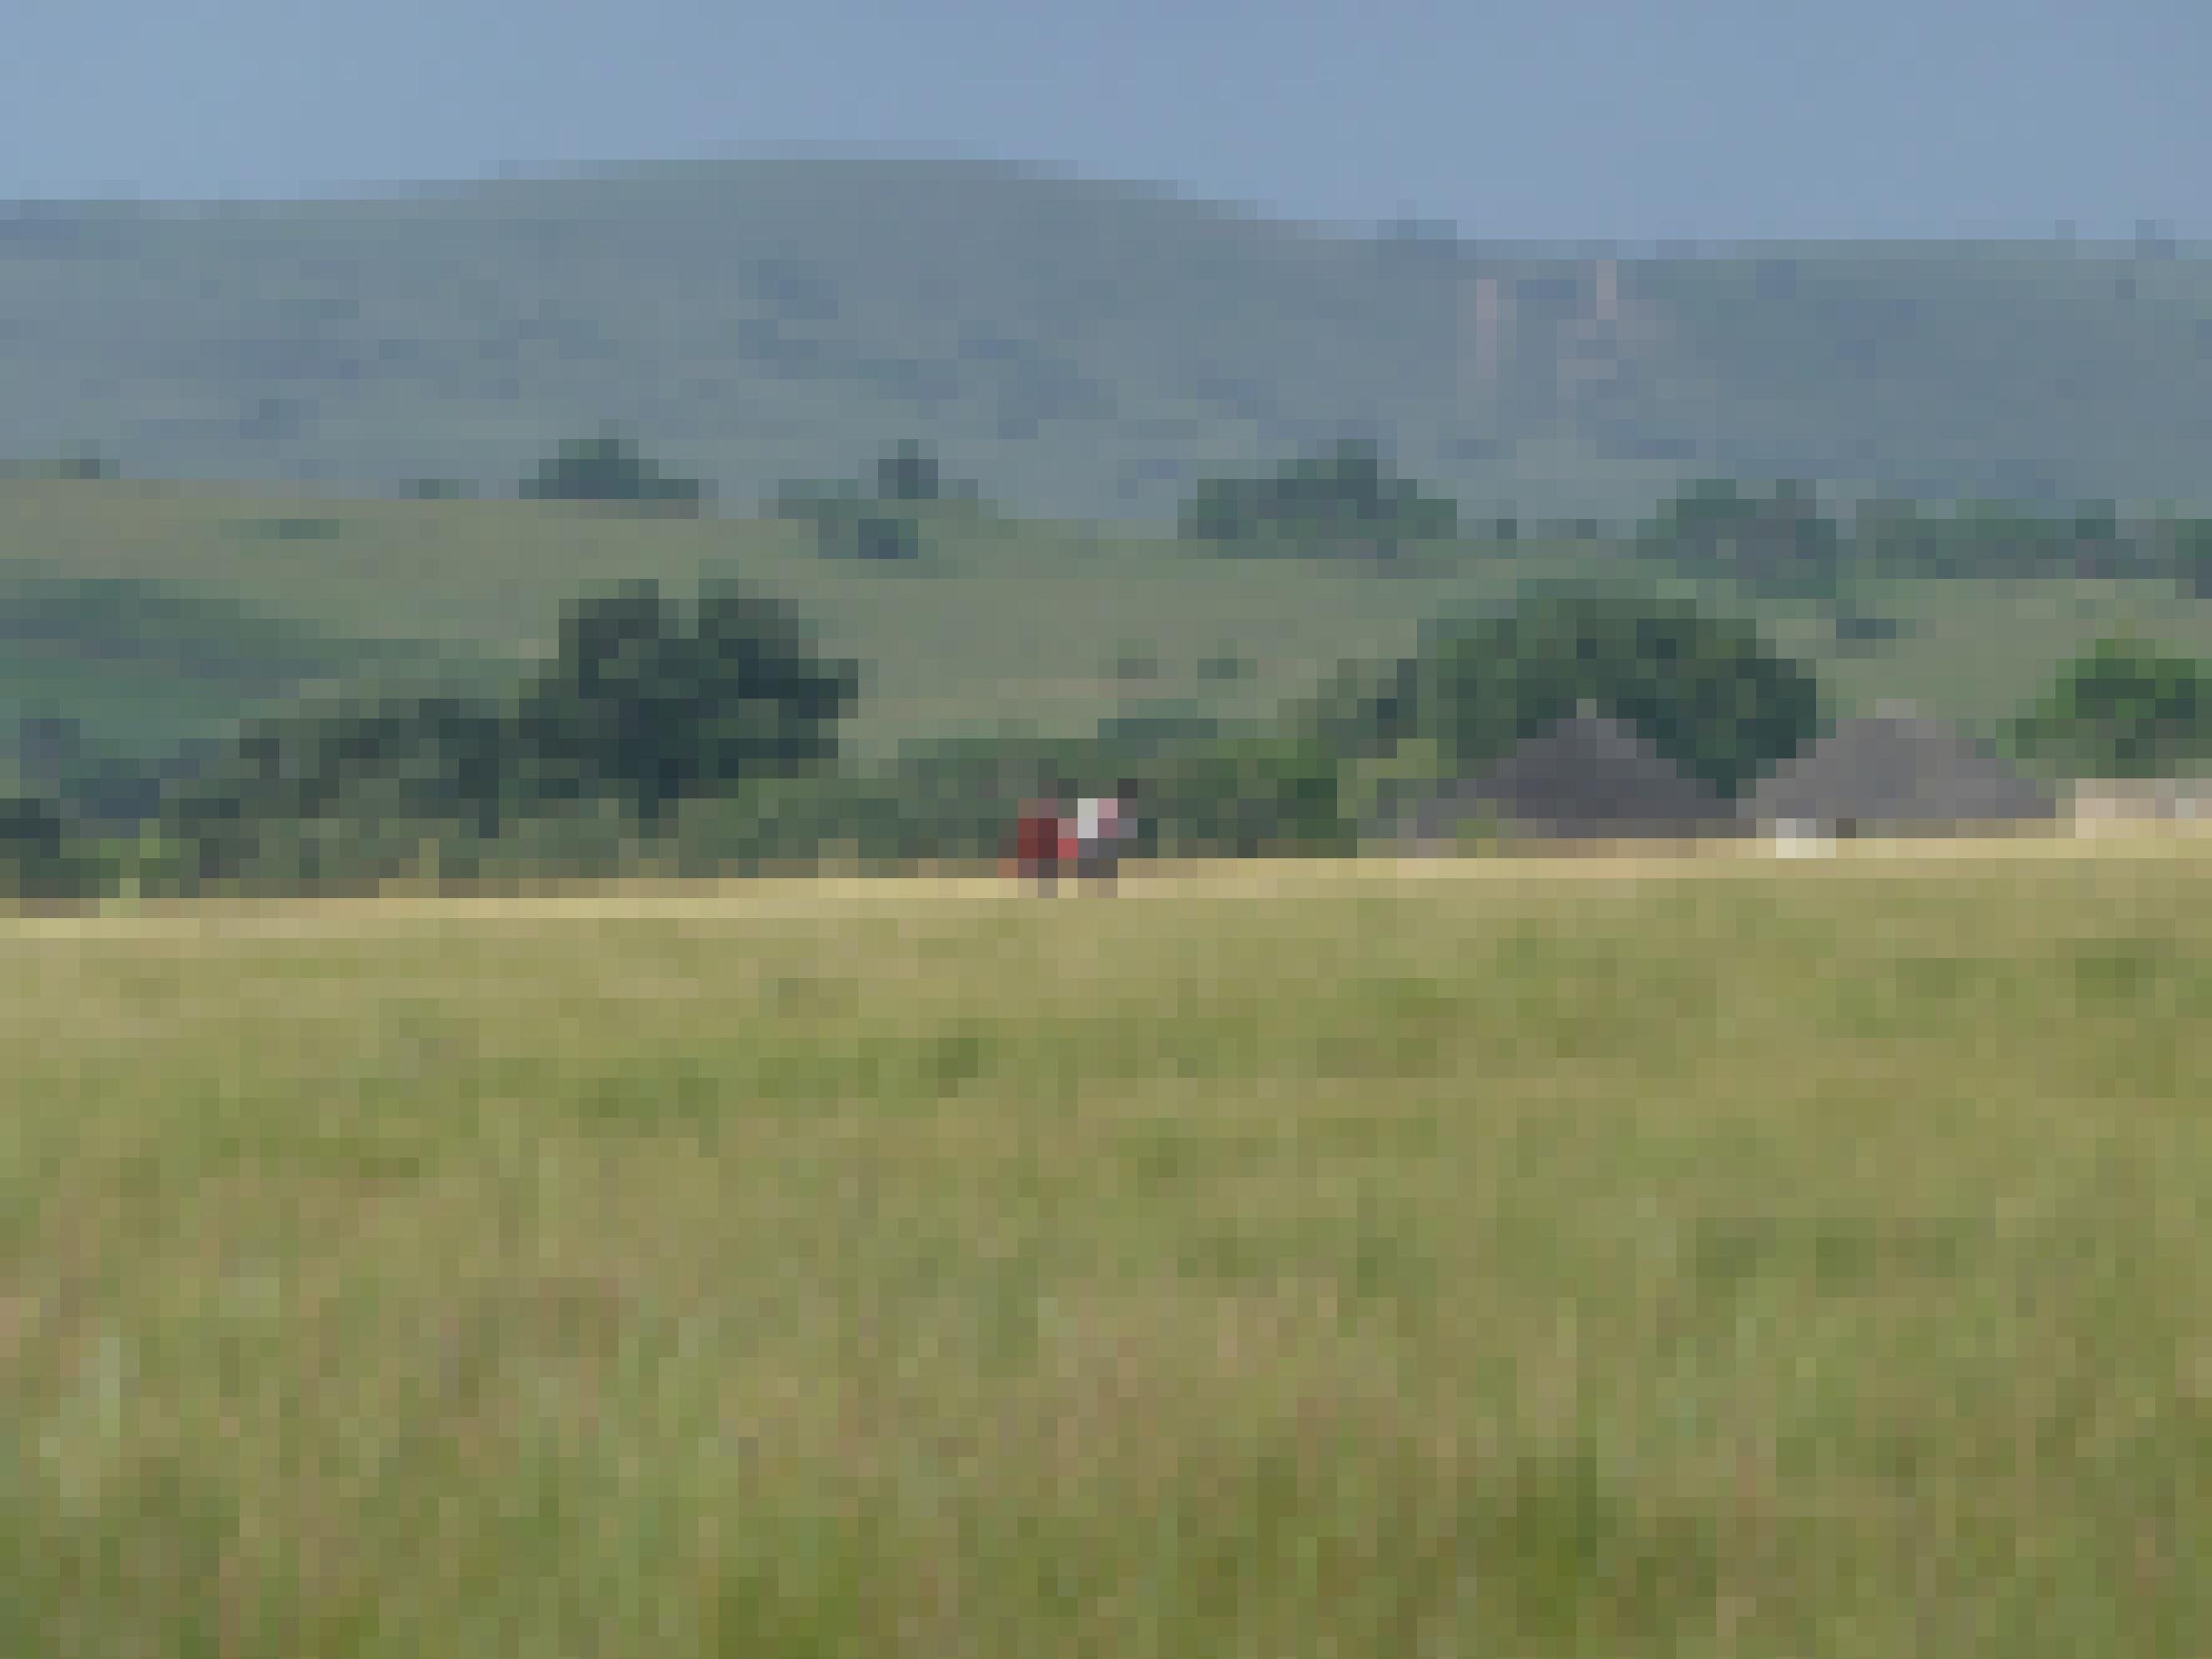 Inmitten der Hügellandschaft sind zwei Grundschüler auf dem Schulweg, sie gehen an zwei strohgedeckten Rundhütten vorbei.